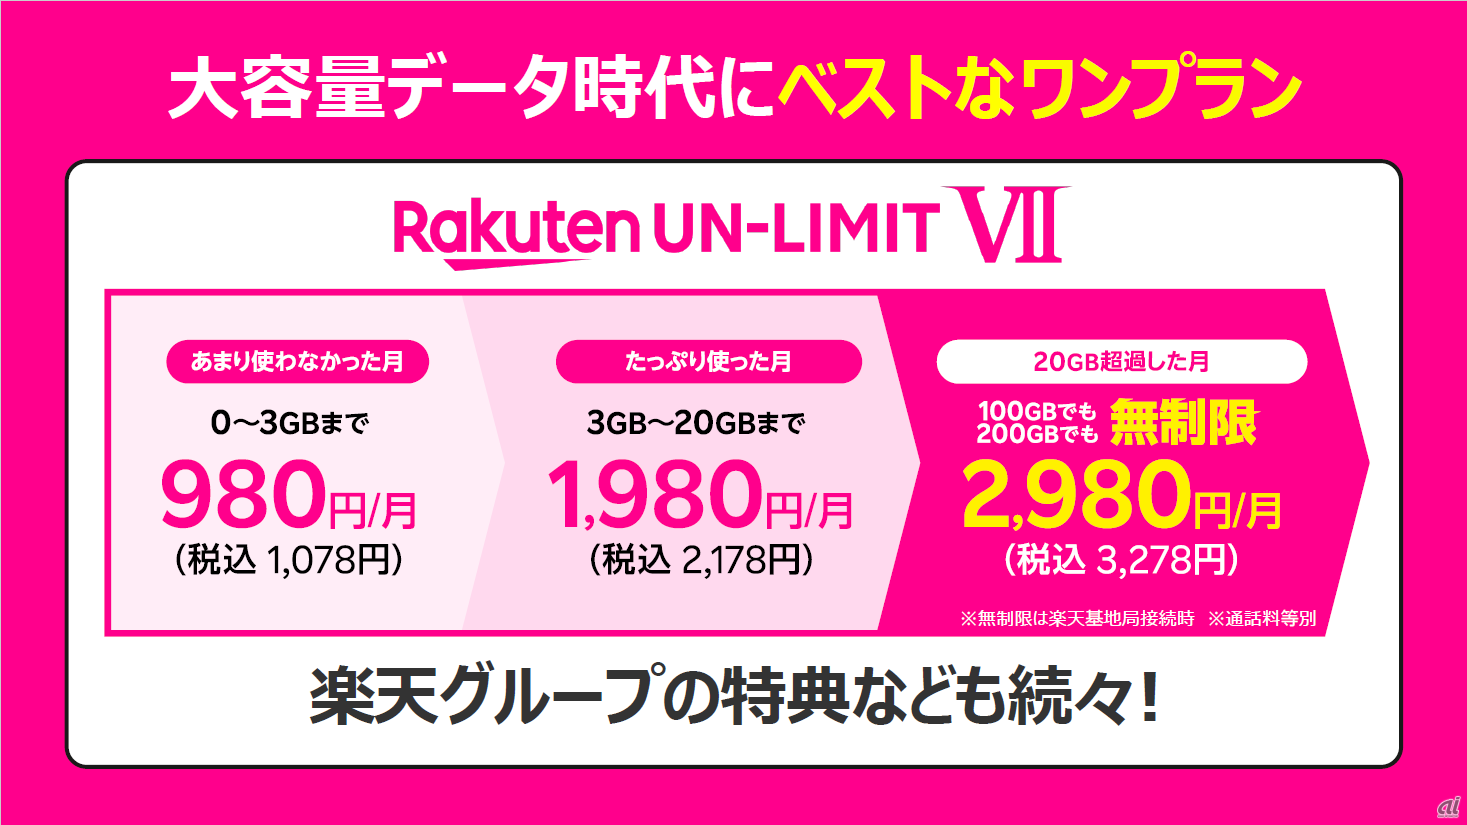 楽天モバイルの新料金プラン「Rakuten UN-LIMIT VII」。1GB以下の利用であれば0円で利用できる仕組みがなくなり、最低でも月額1078円かかるようになった